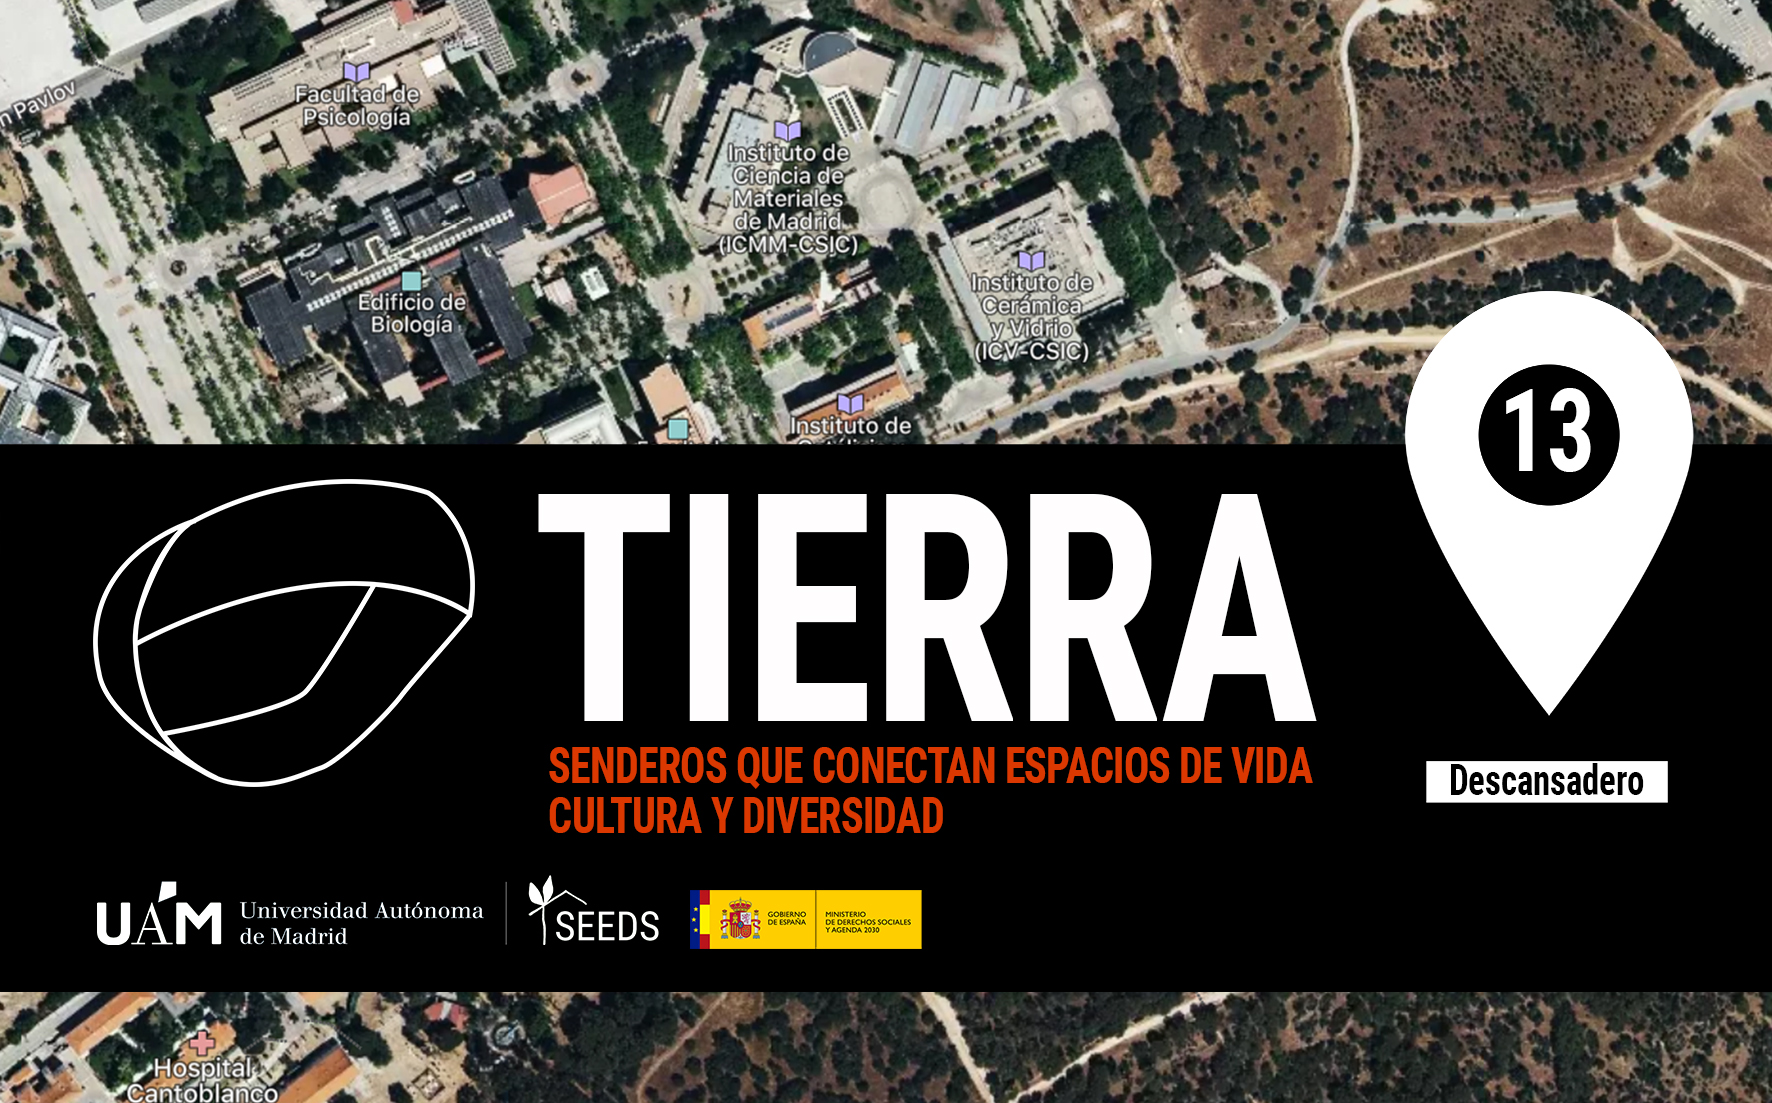 TIERRA: Descansadero 13_Senderos que conectan vida cultura diversidad